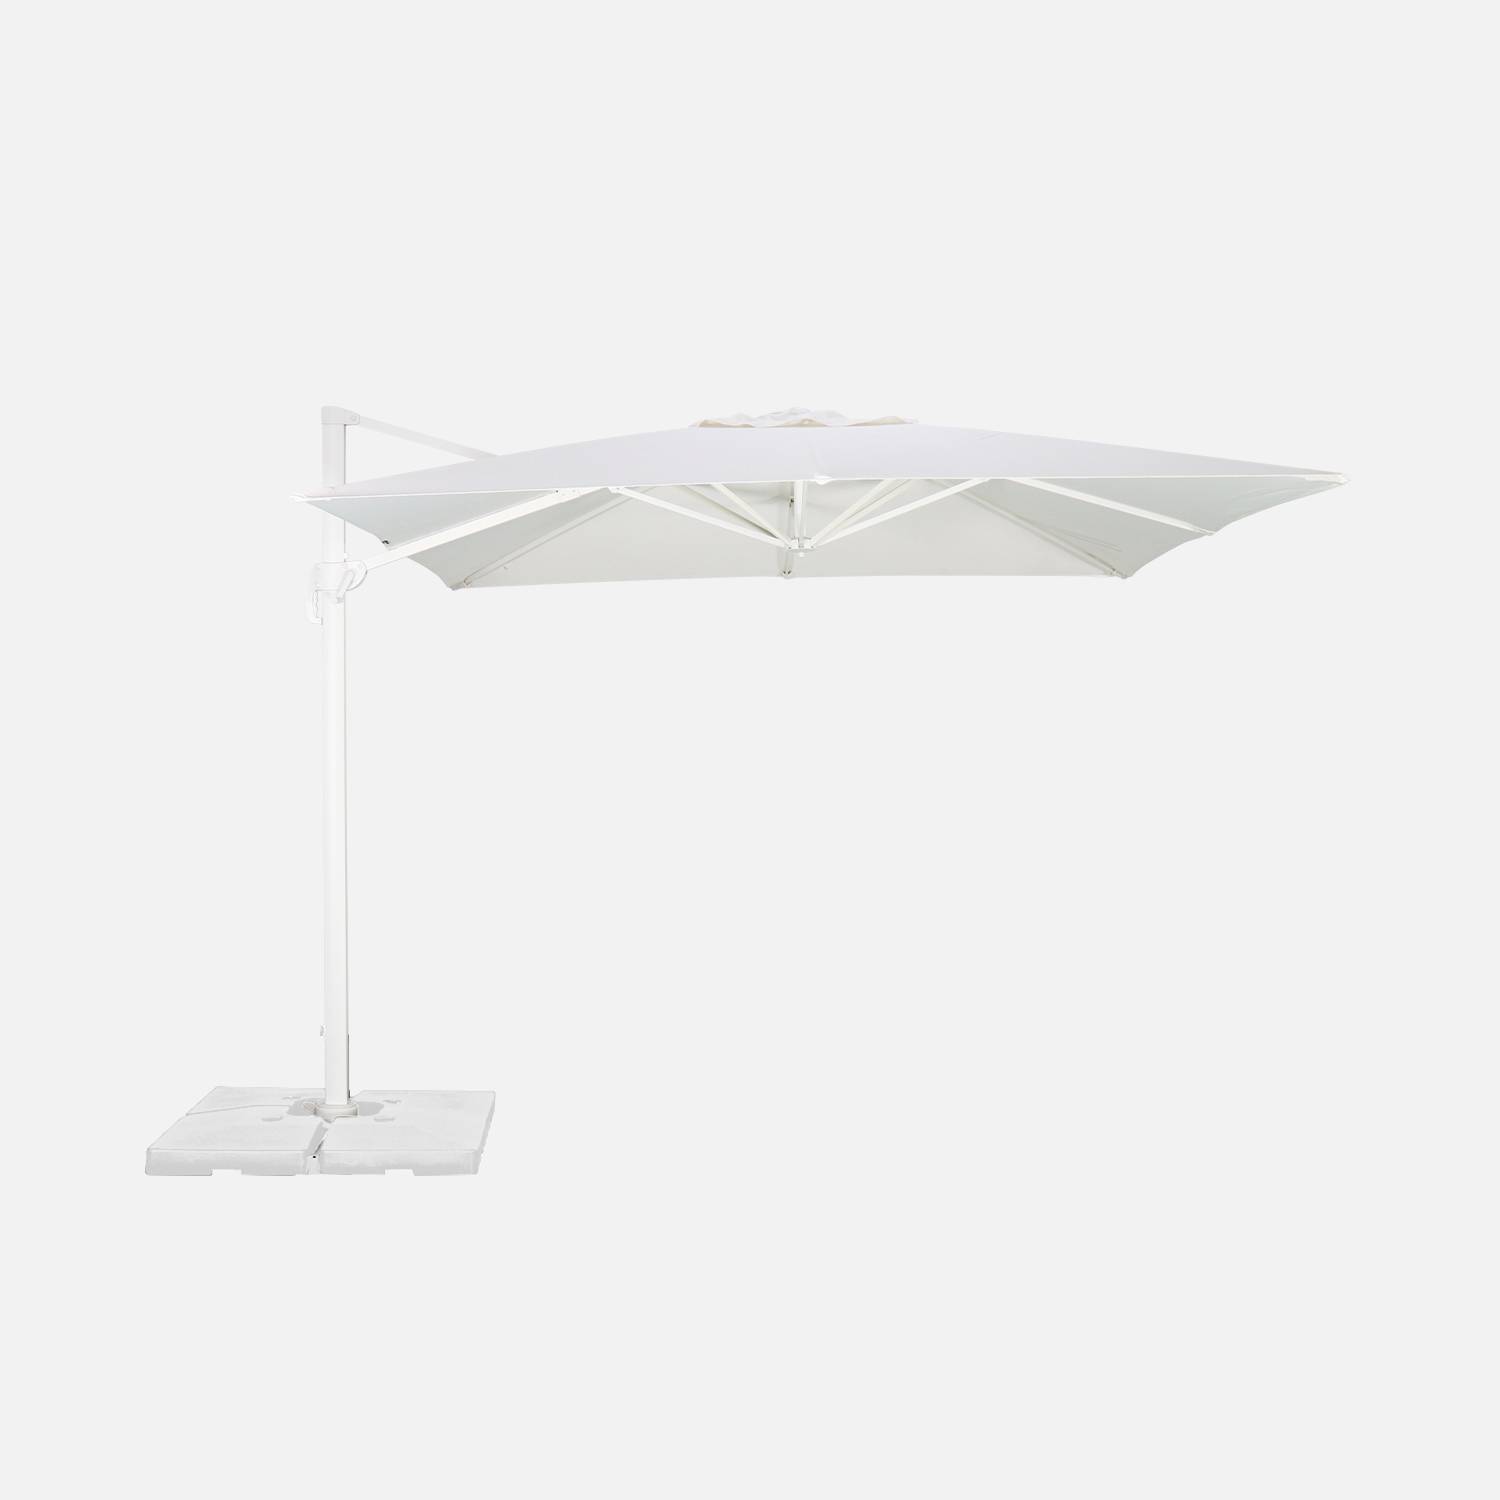 Hoogwaardige 3 x 3m vierkante parasol- Falgos - Wit - Kantelbare, opvouwbare en 360° draaibare zweefparasol Photo6